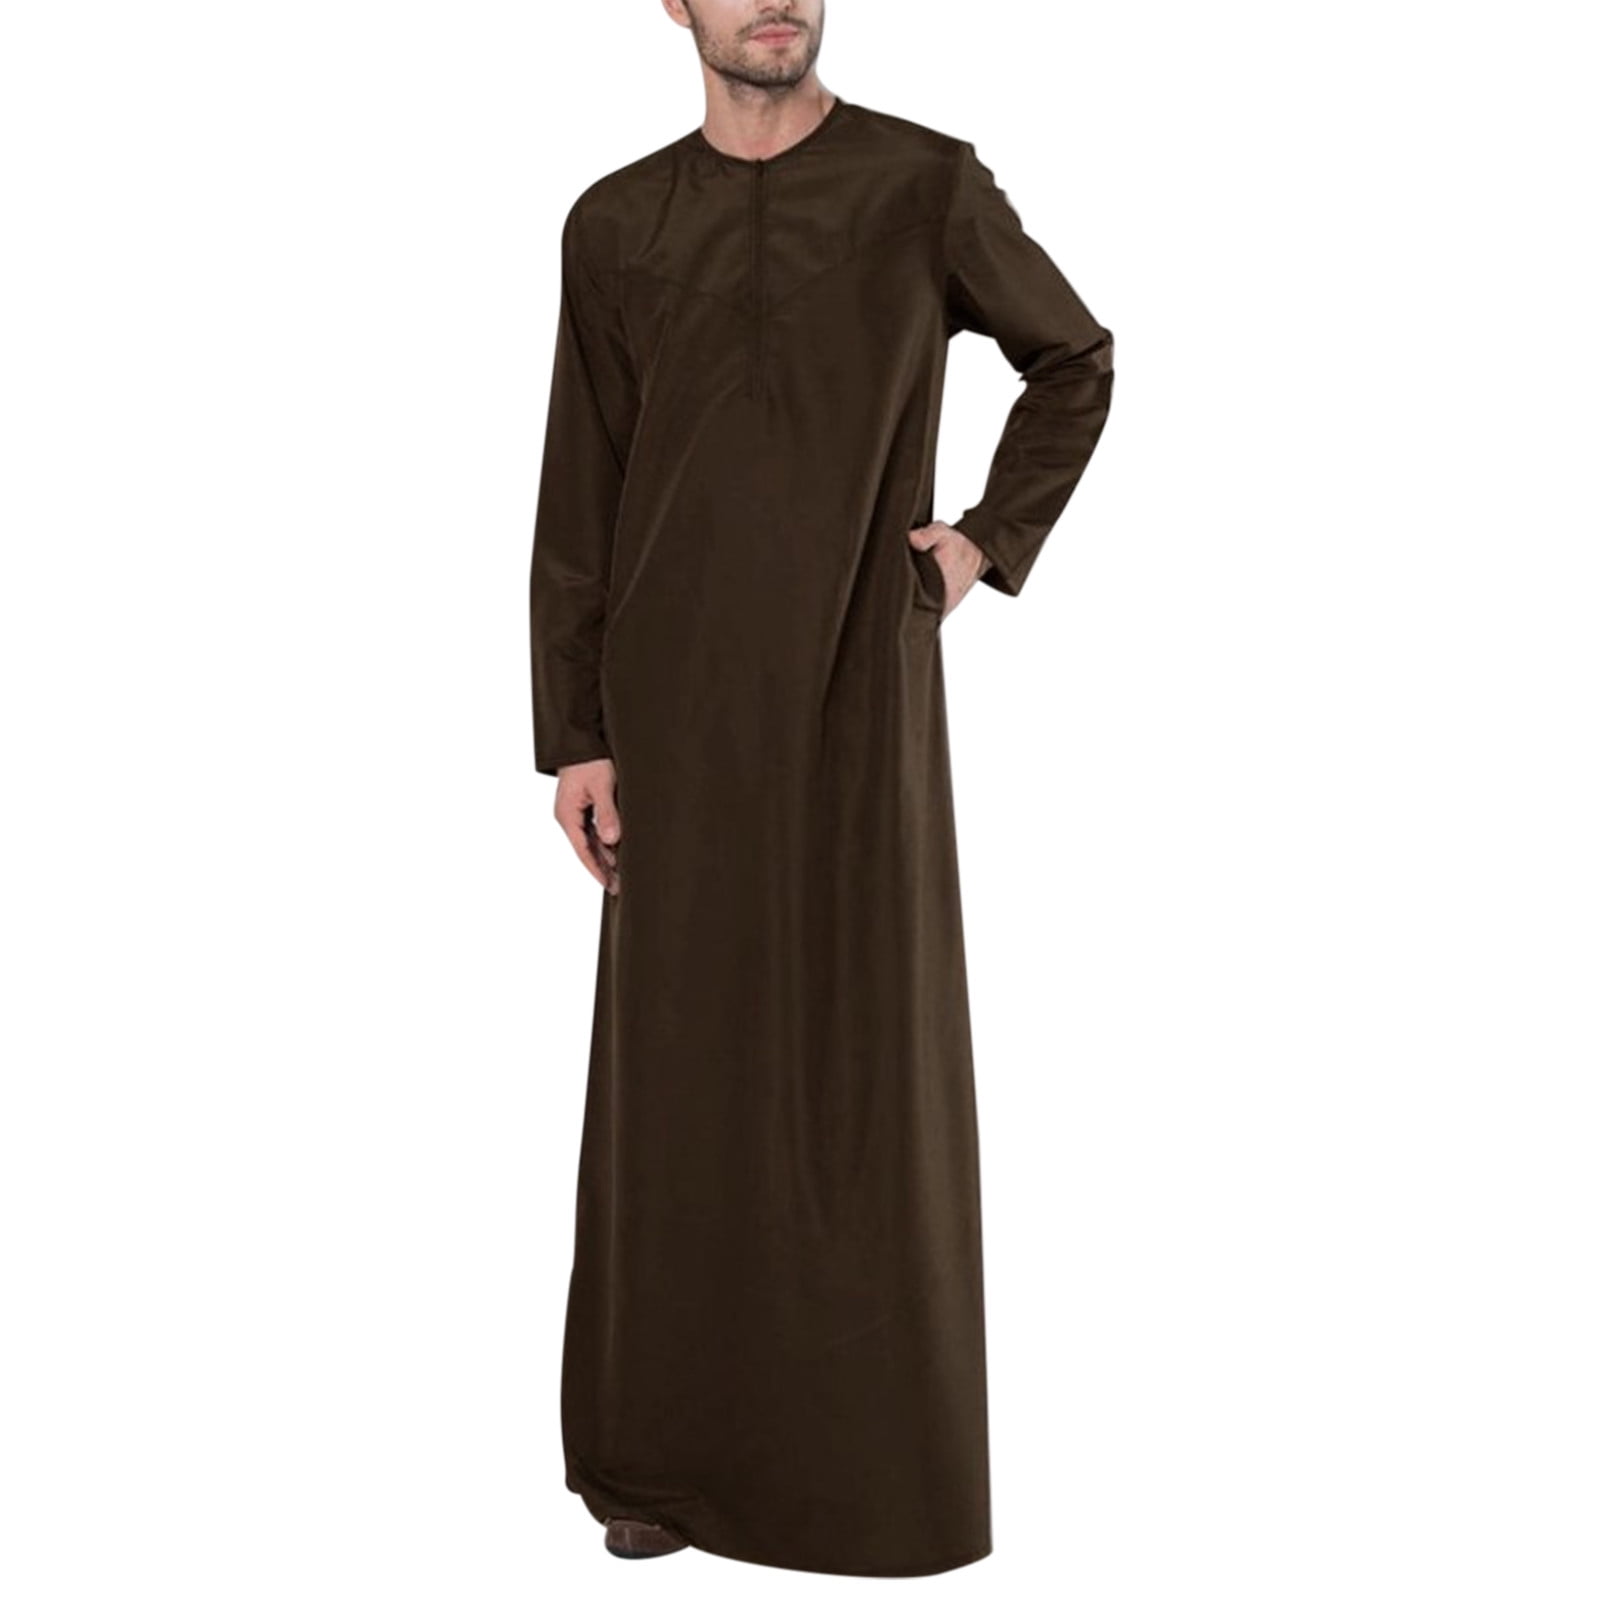 Kcodviy Mens Casual Loose Arab Dubai Robe Long Sleeve Zipper Shirt ...